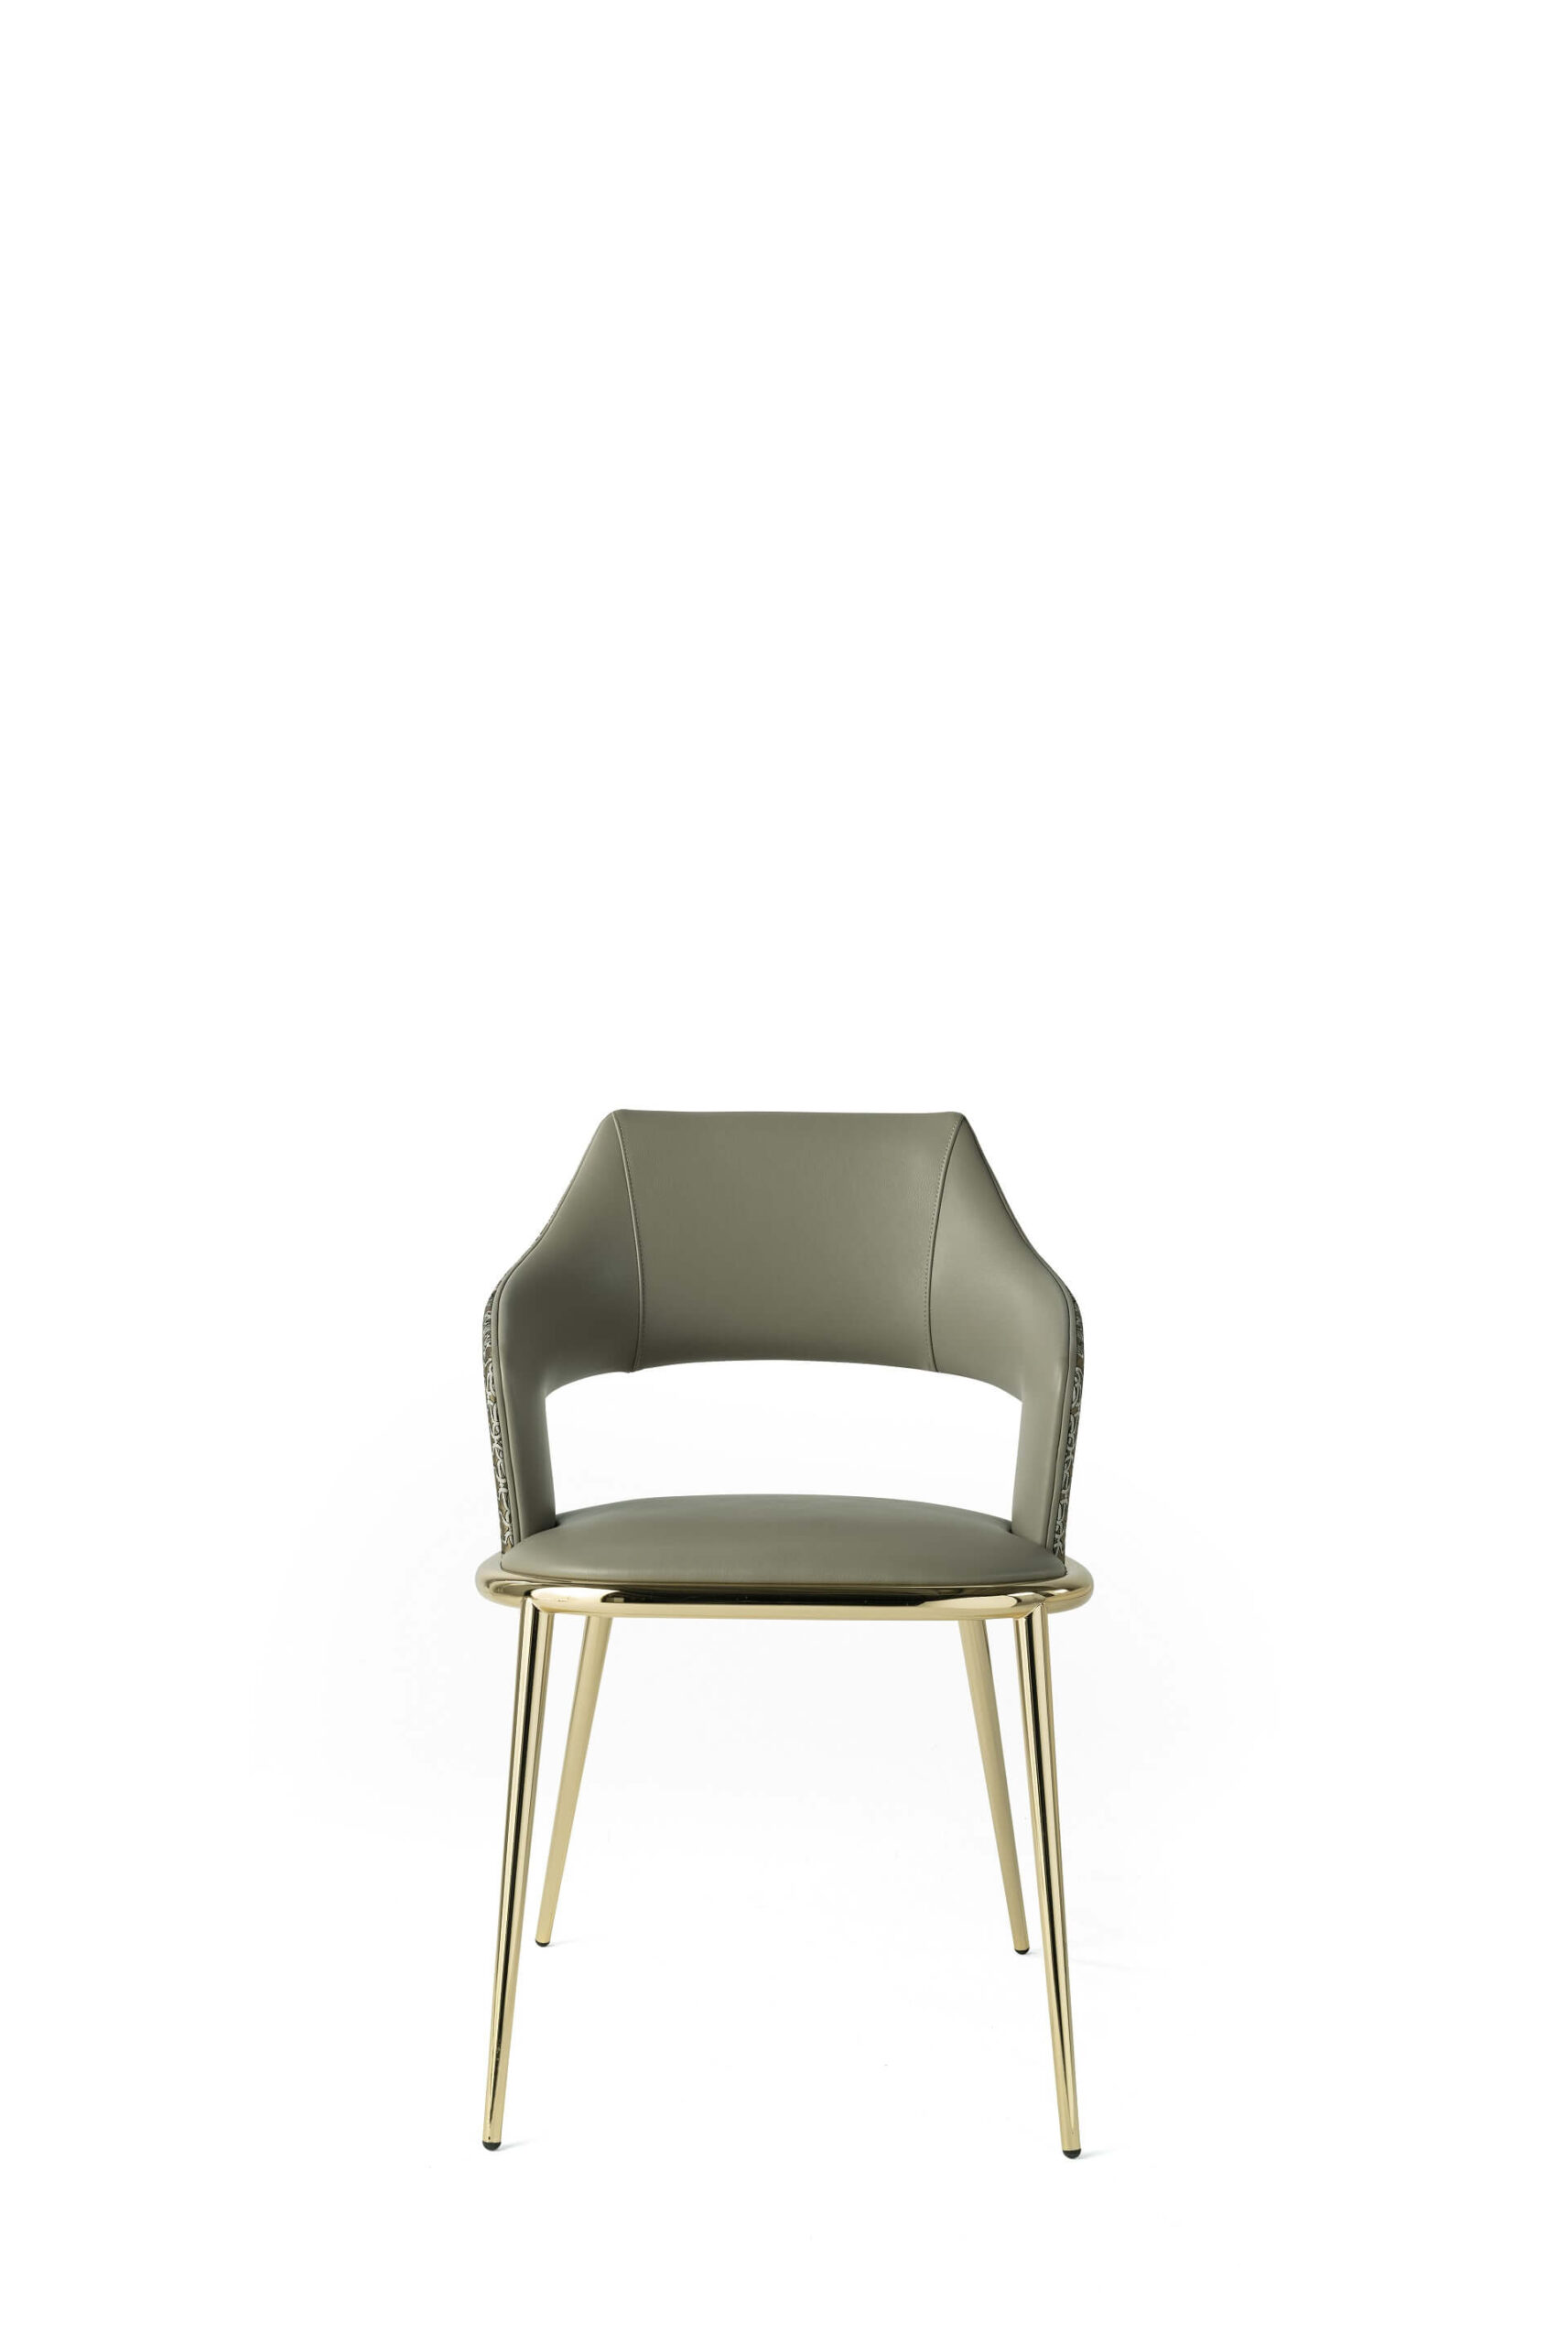 Roberto Cavalli Home Interiors_Shira chair